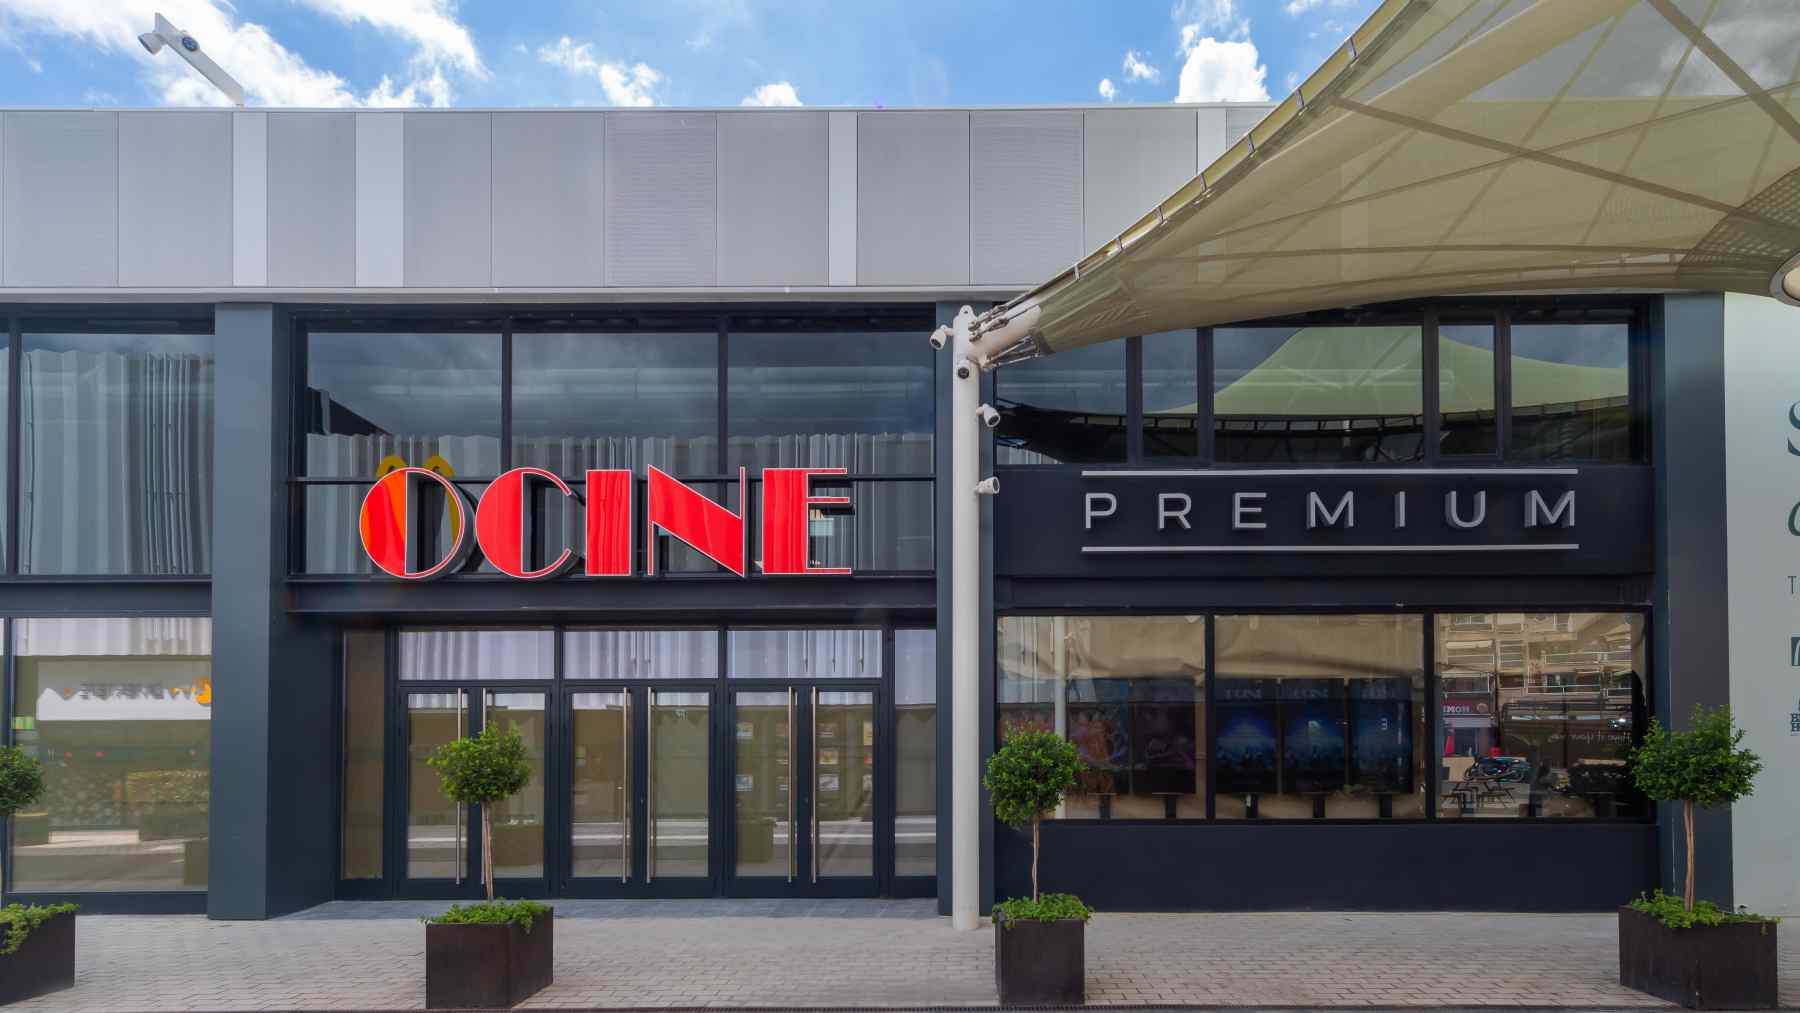 OCINE PREMIUM abre sus puertas el 26 de agosto en el centro comercial Porto Pi.